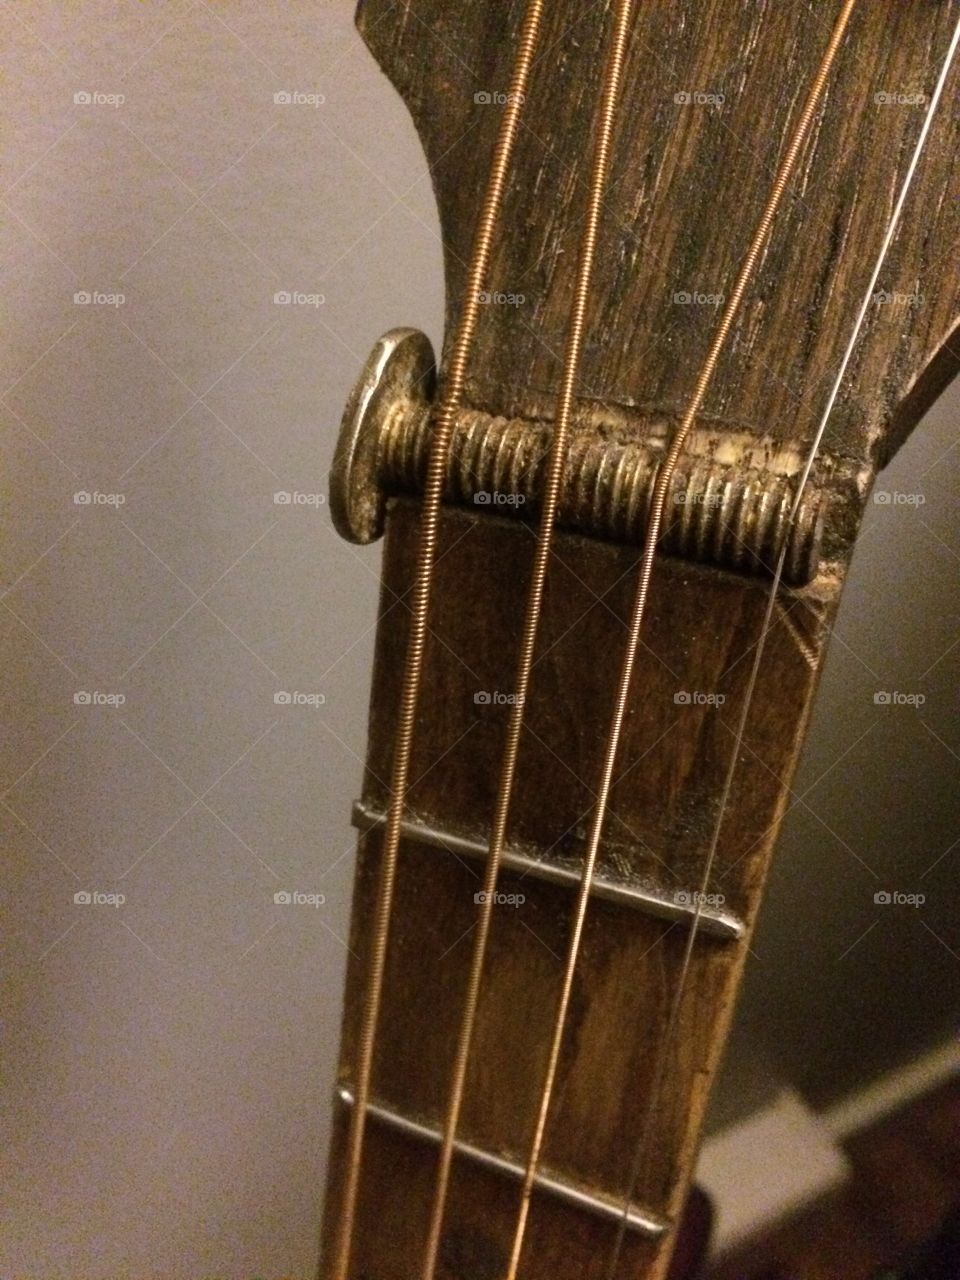 Homemade guitar